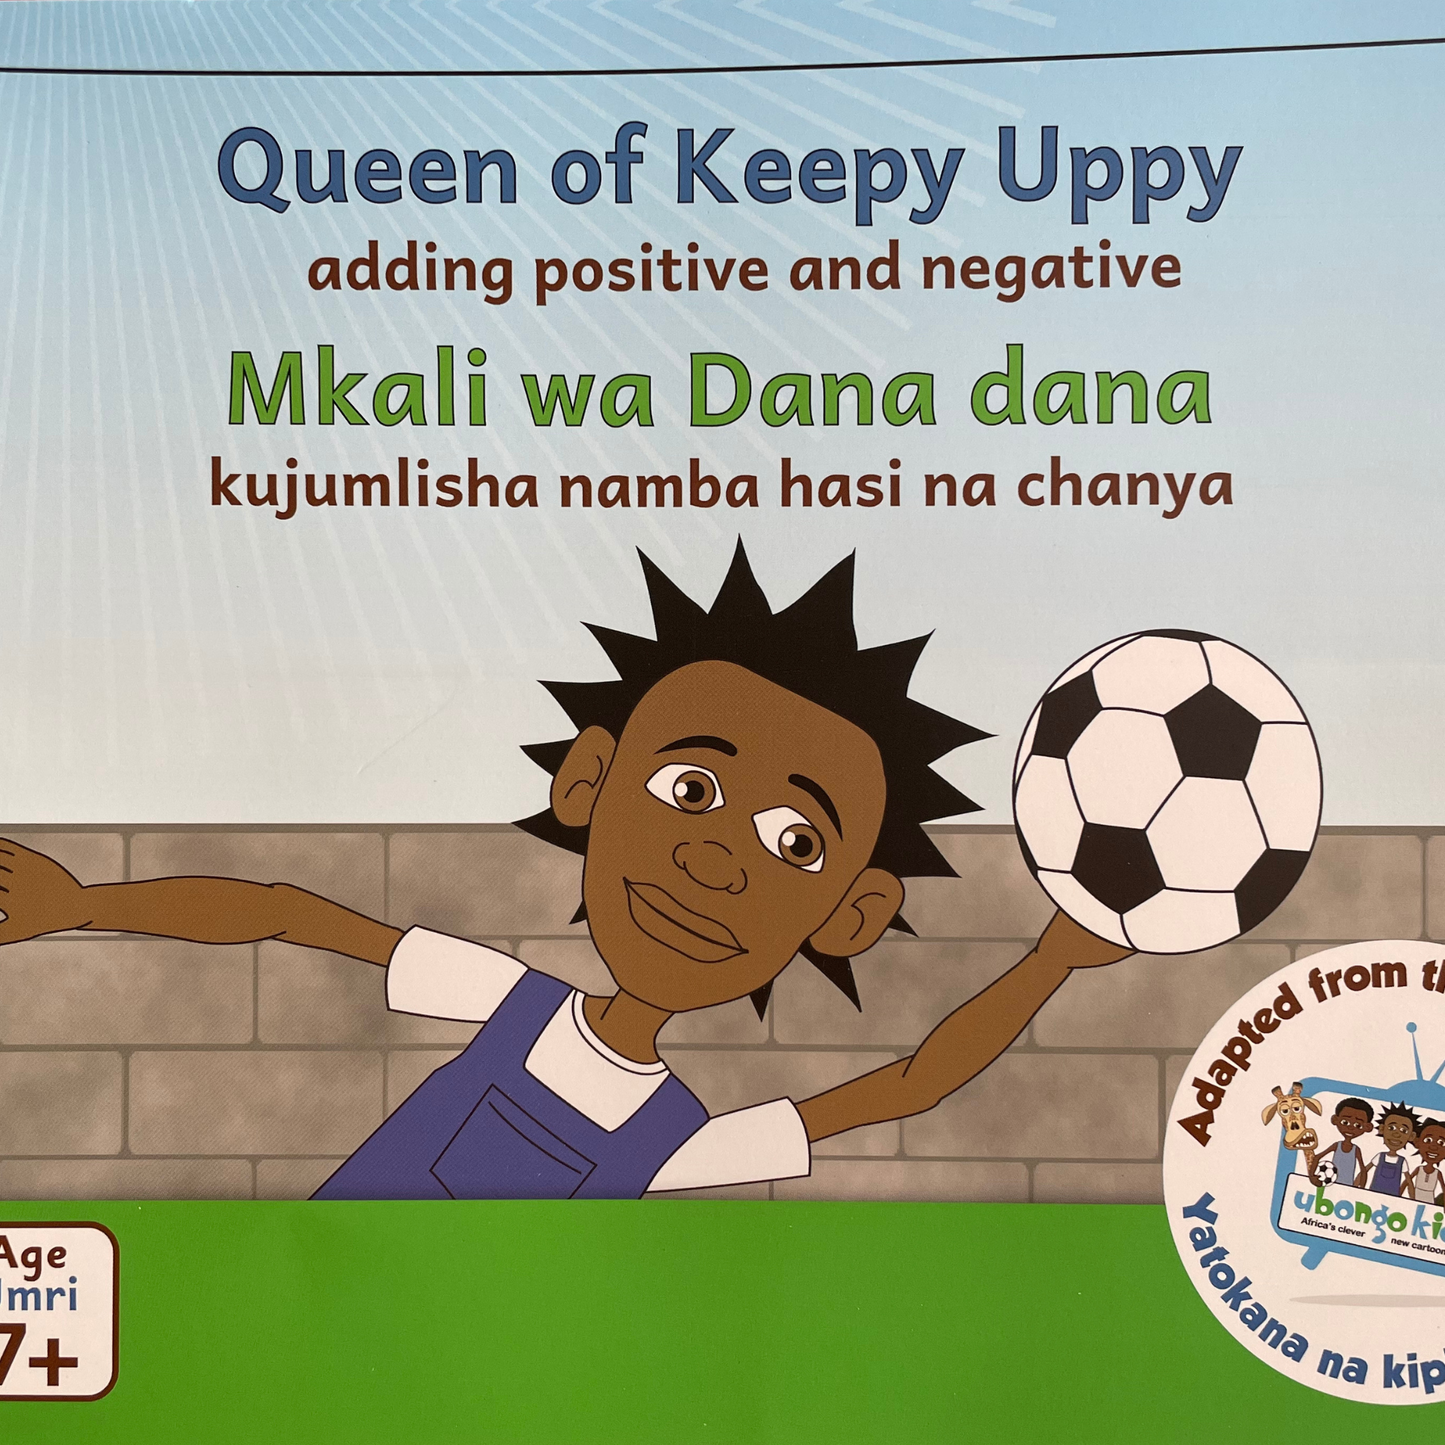 Queen of keepy uppy: Adding positive and negative / Mkali wa dana dana: Kujumlisha namba hasi na chanya